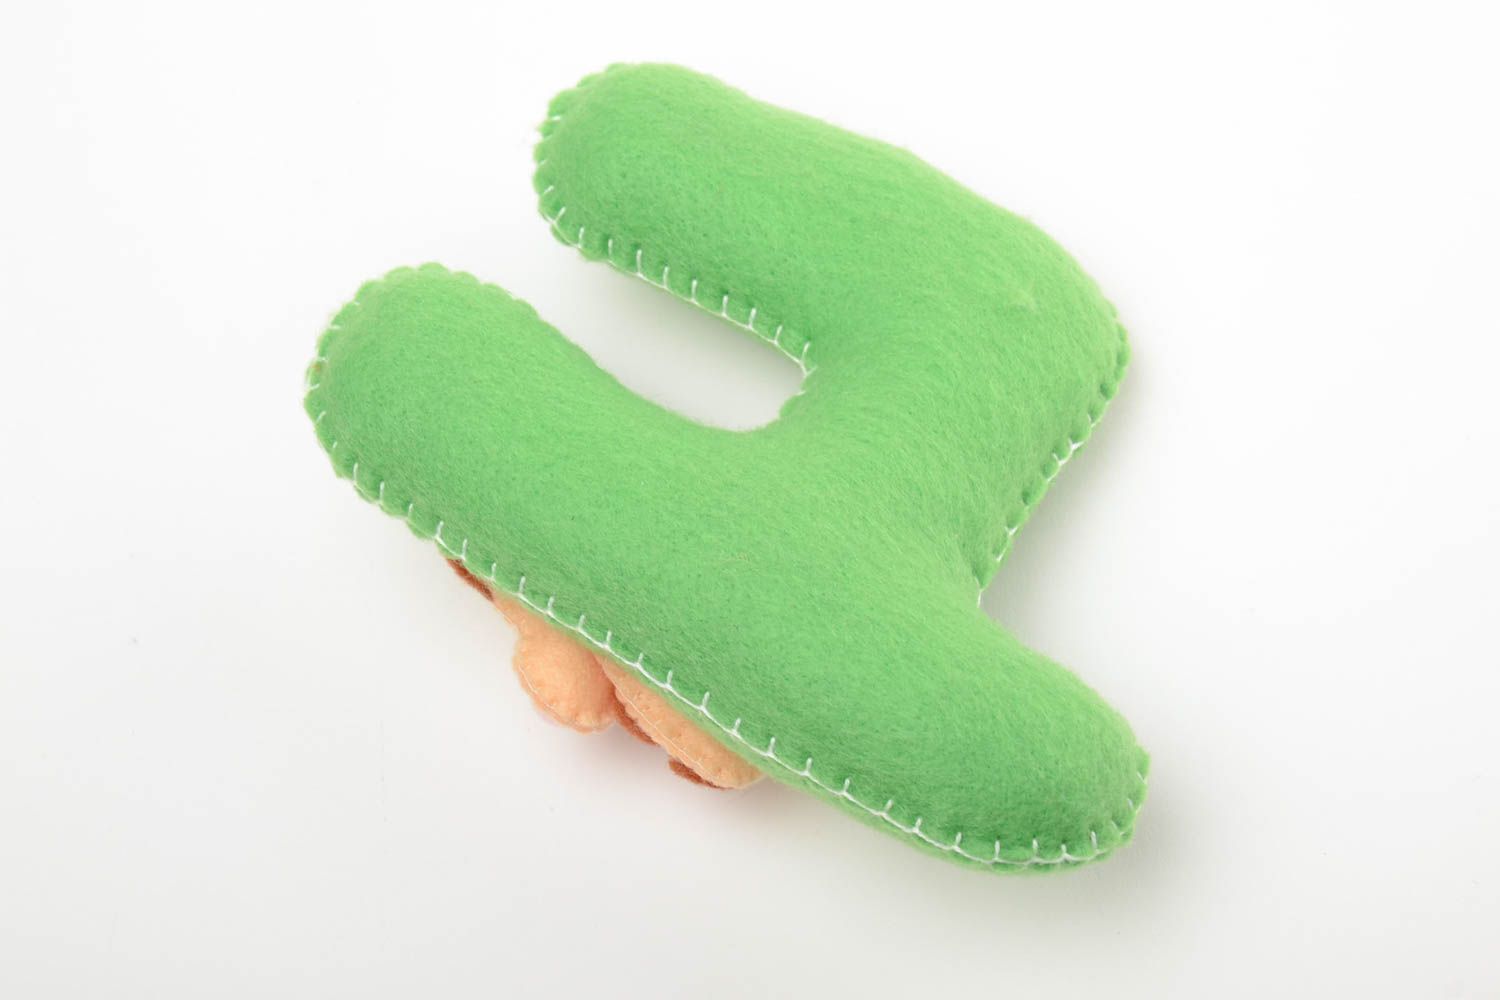 Декоративная буква игрушка из фетра ручной работы зеленая оригинальная для ребенка фото 3